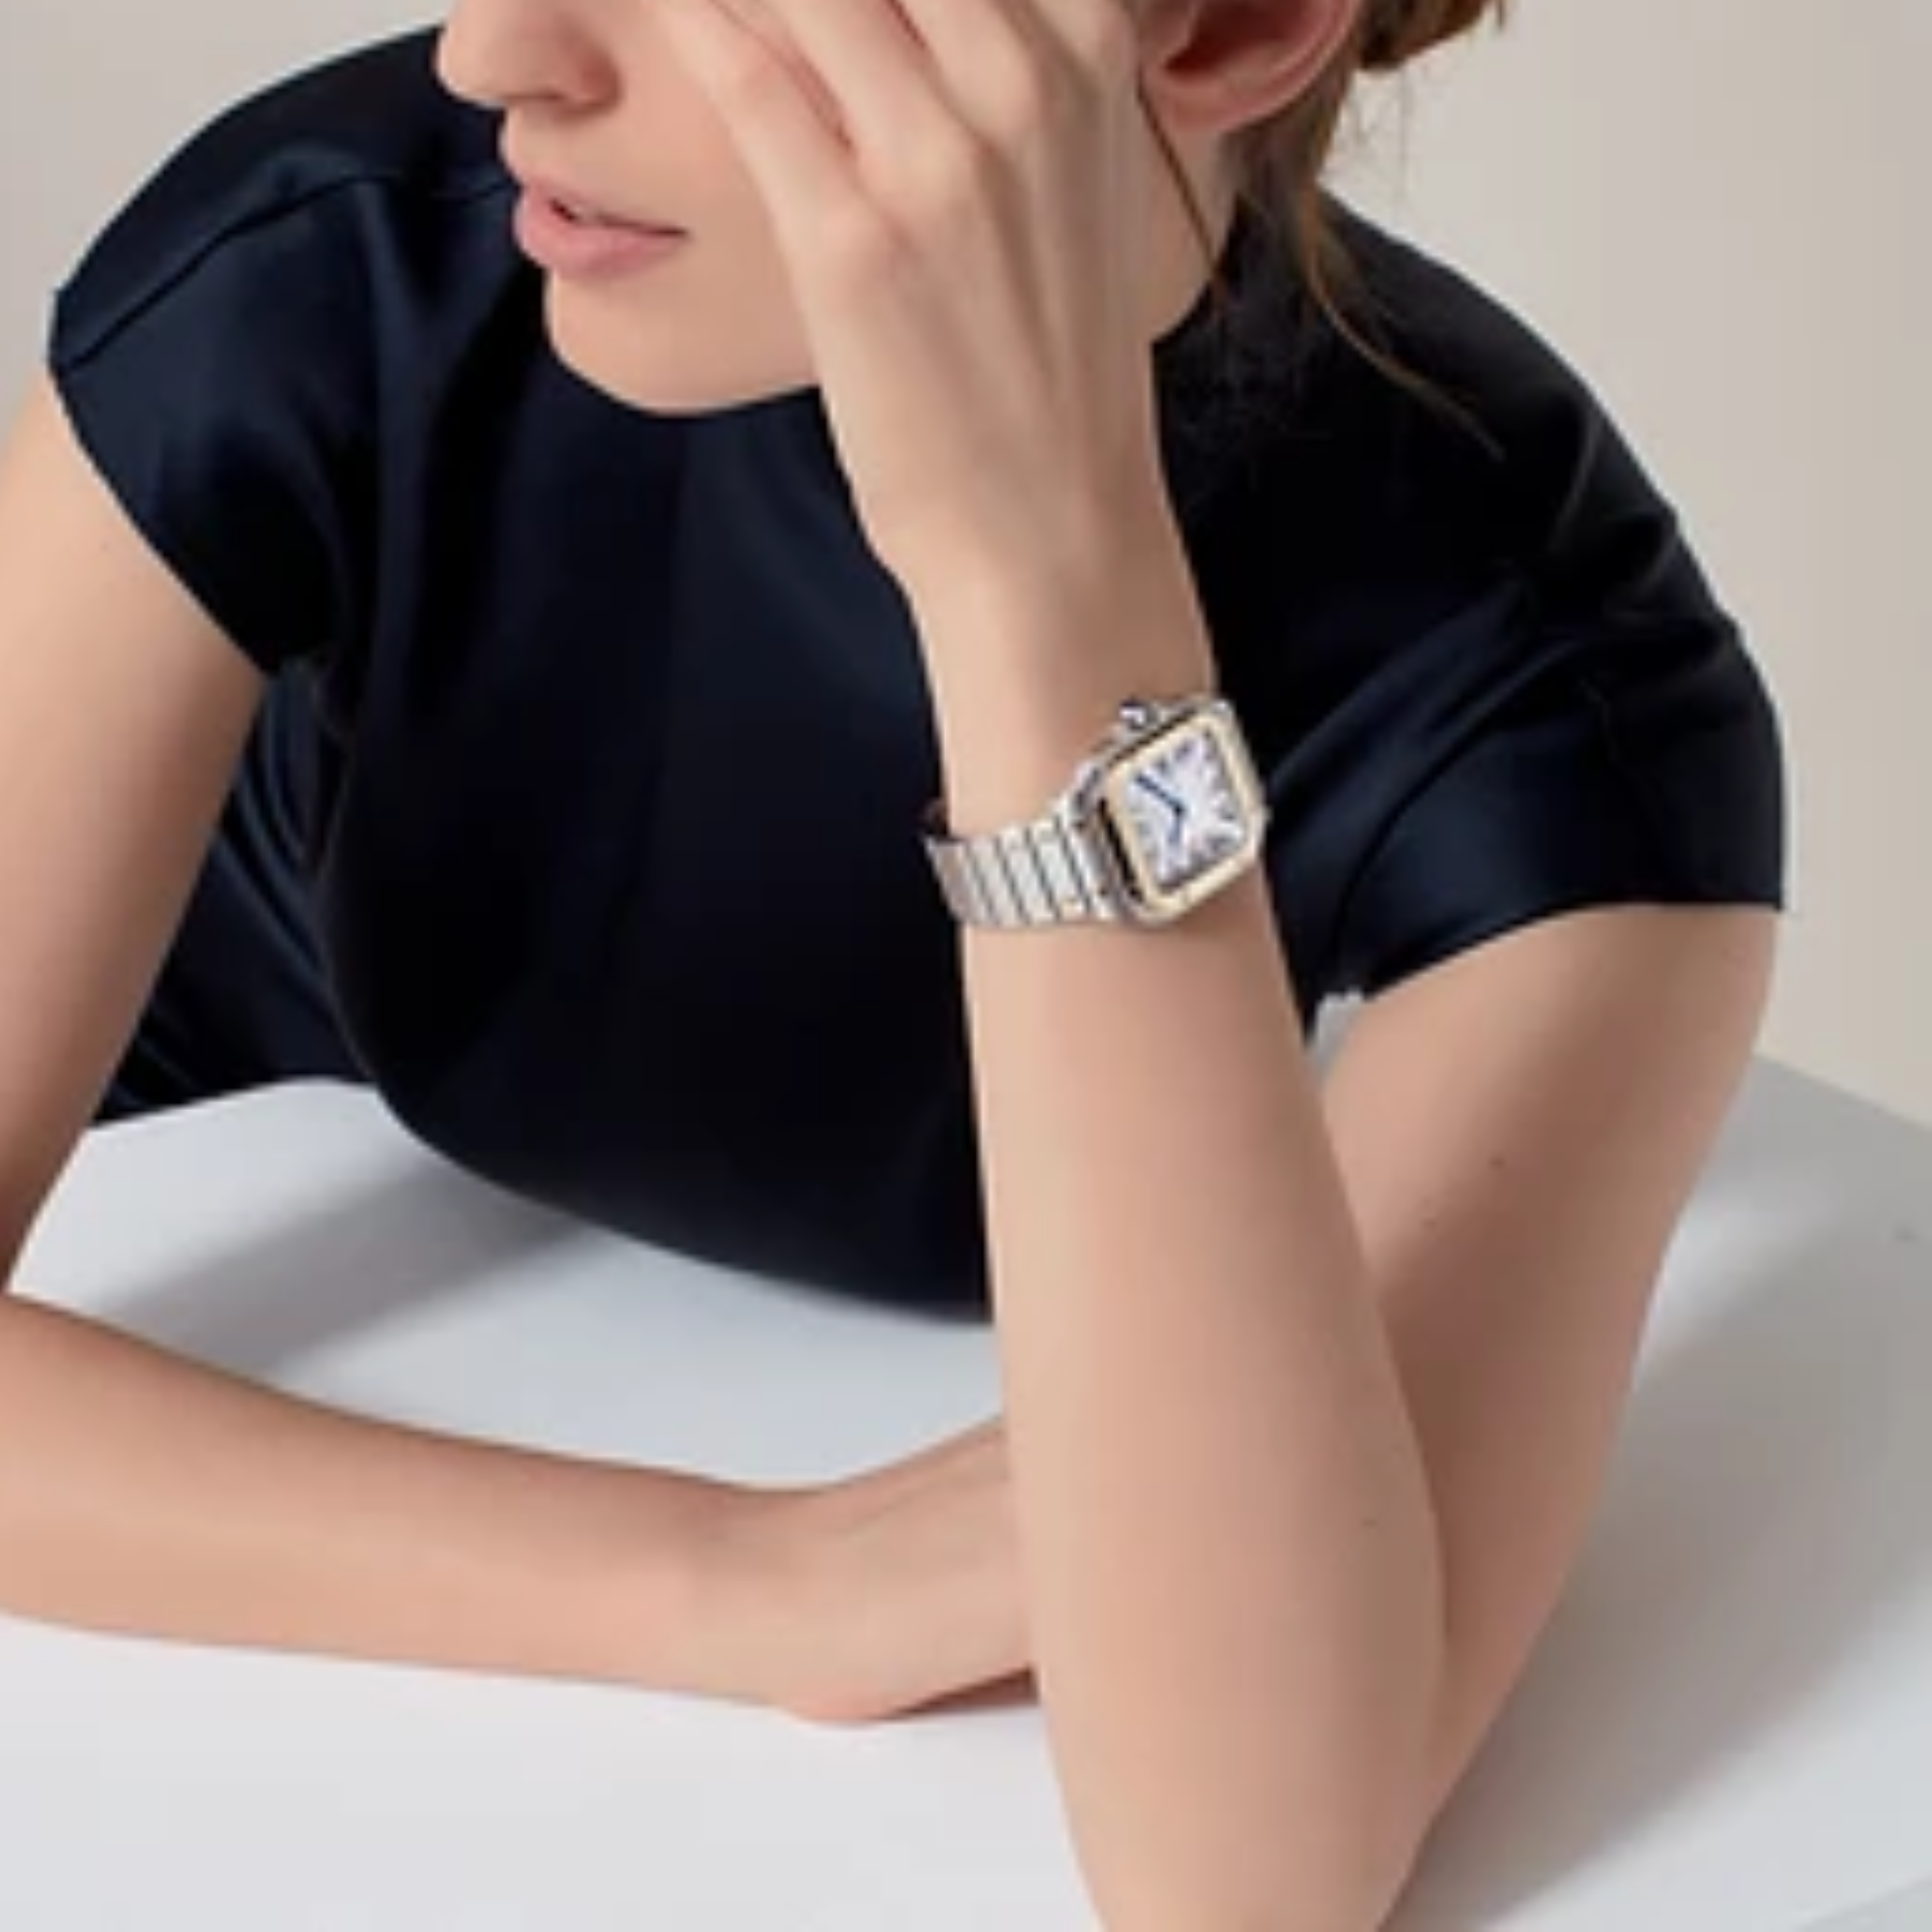 SPECHT & SOHNE 'Santos' Homage Luxury Automatic Wrist Watch Unisex - Silver Gold